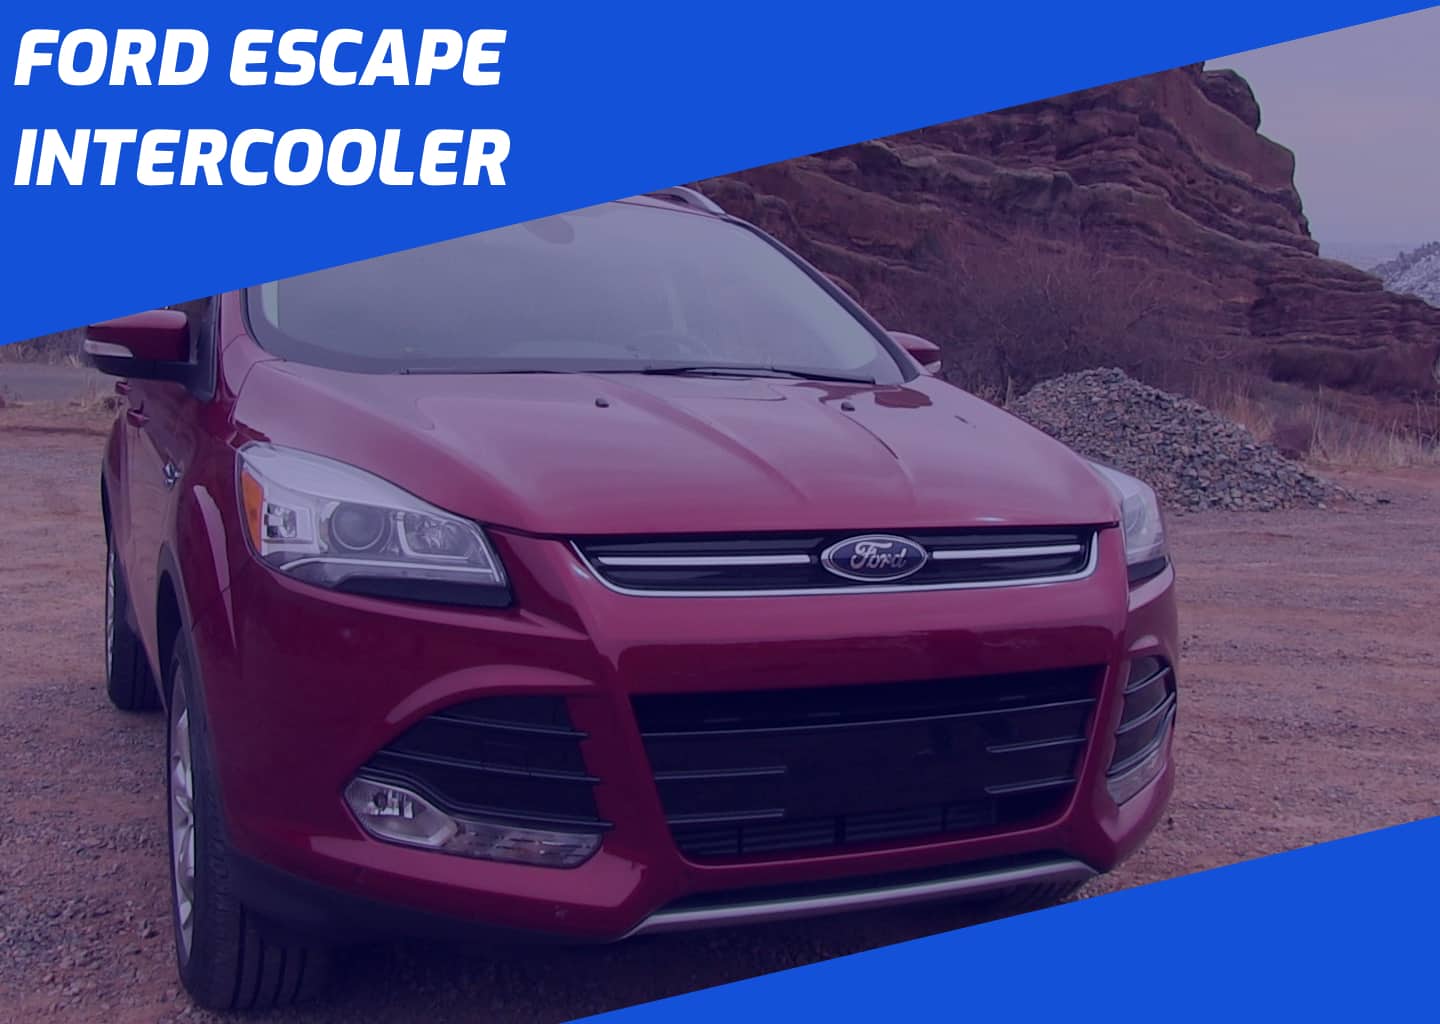 2014 Ford Escape Intercooler